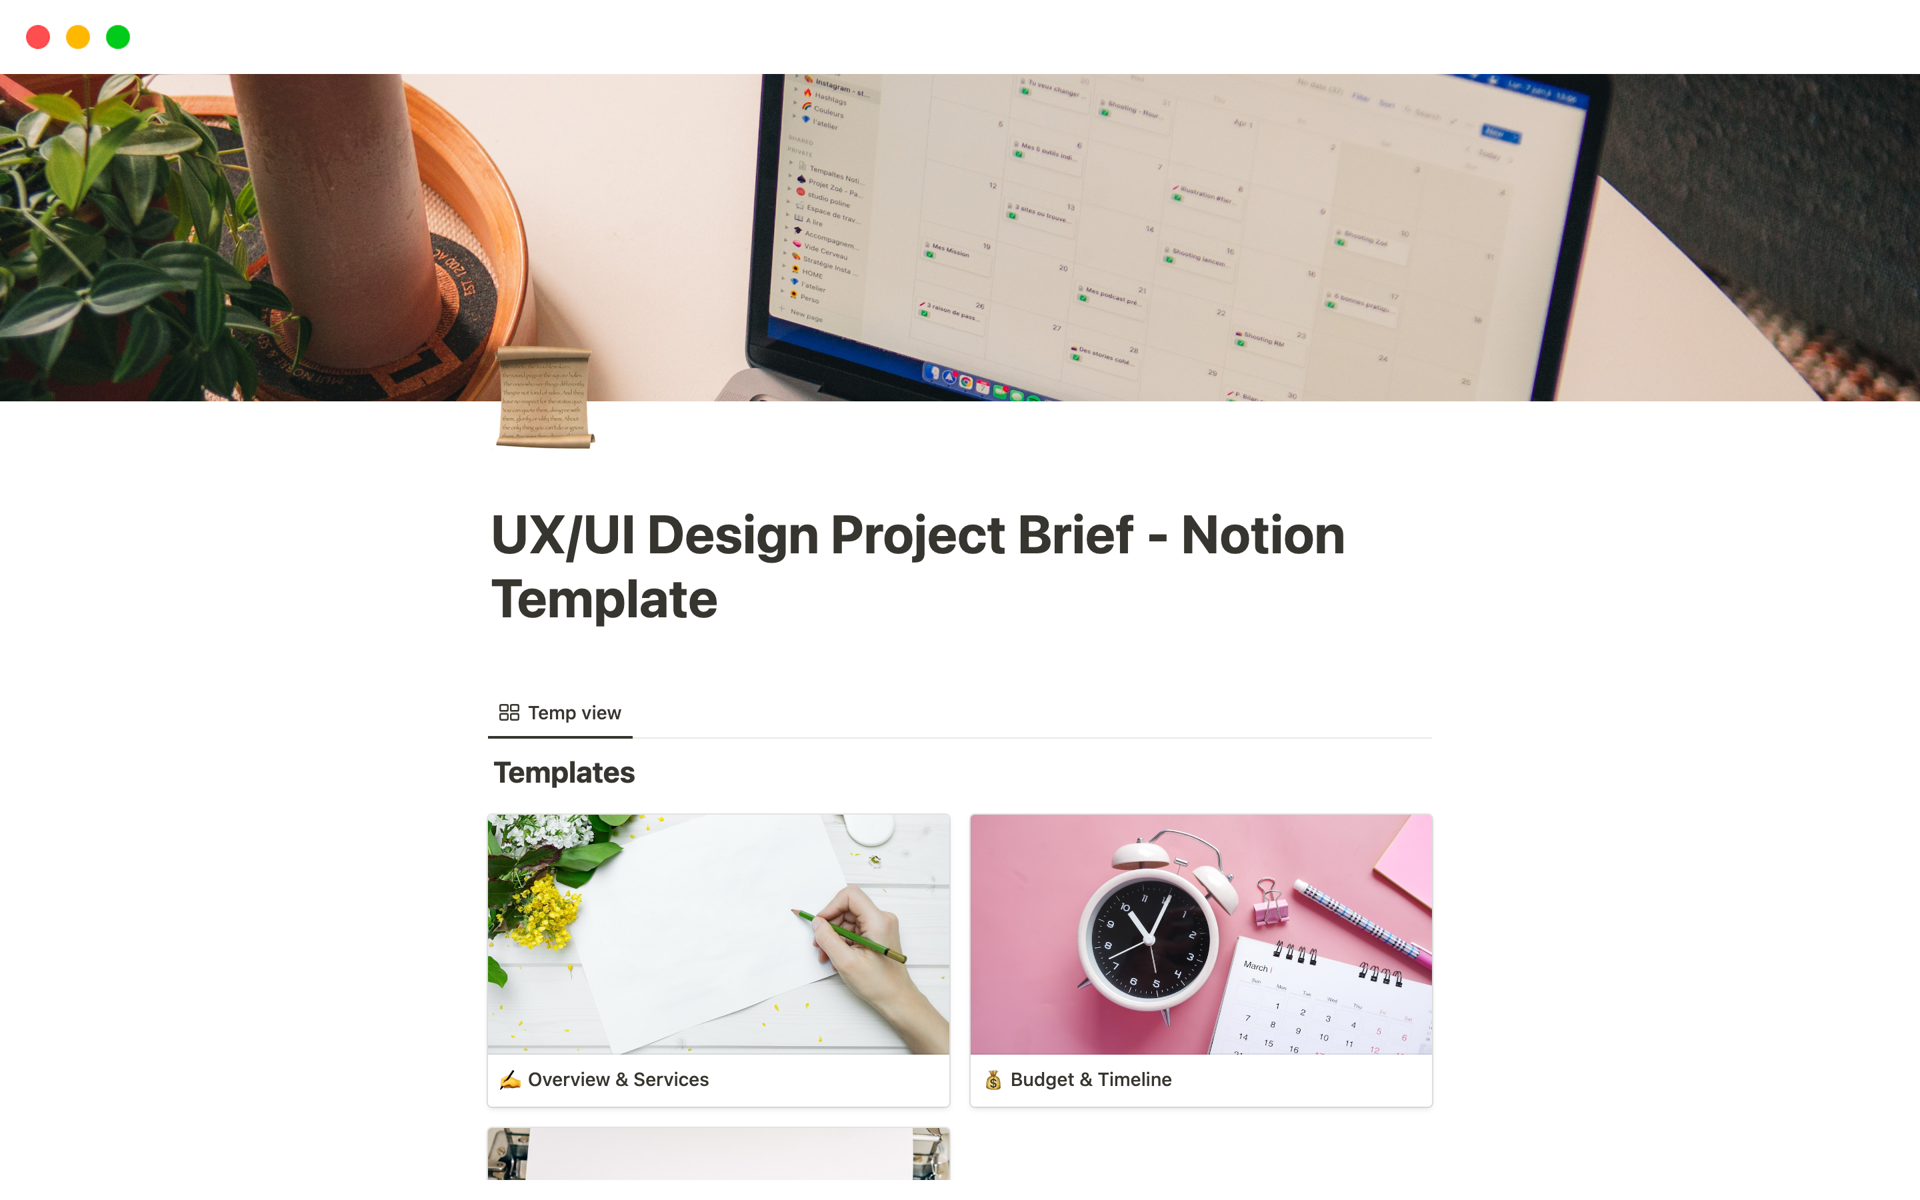 Vista previa de una plantilla para UX/UI Design Project Brief